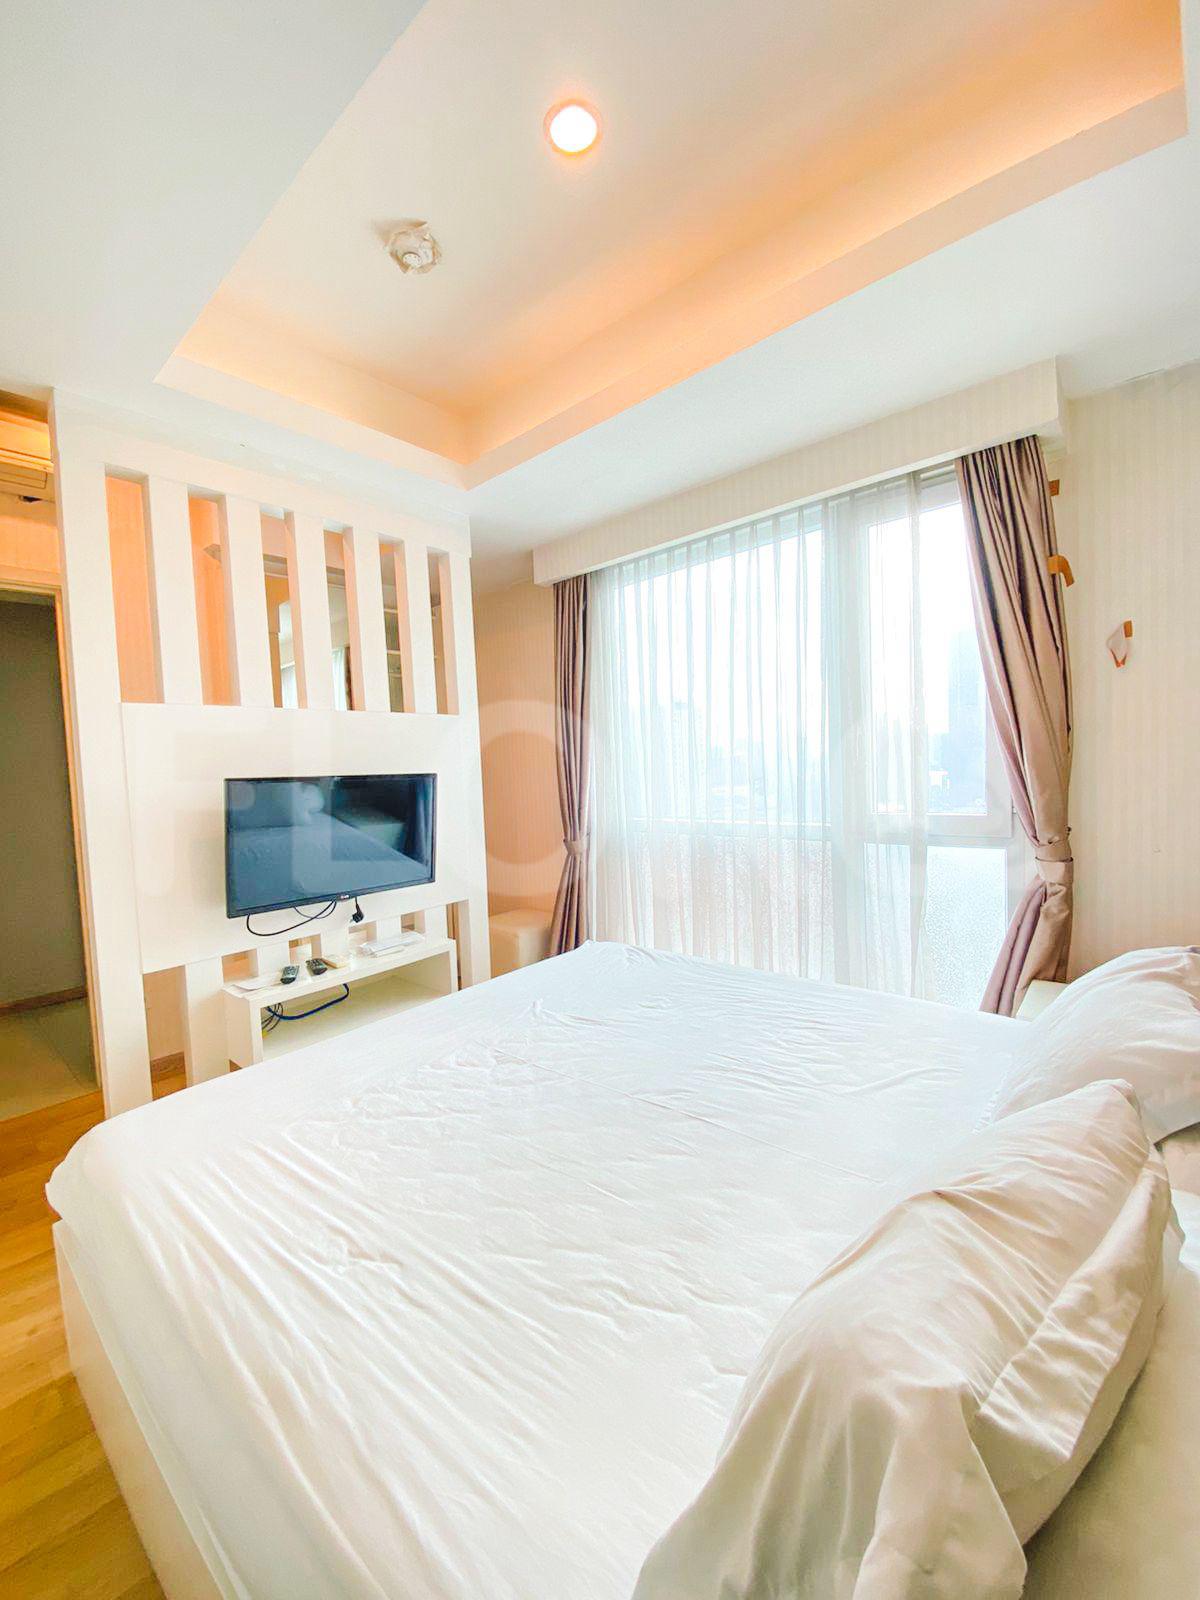 3 Bedroom on 17th Floor fte656 for Rent in Casa Grande